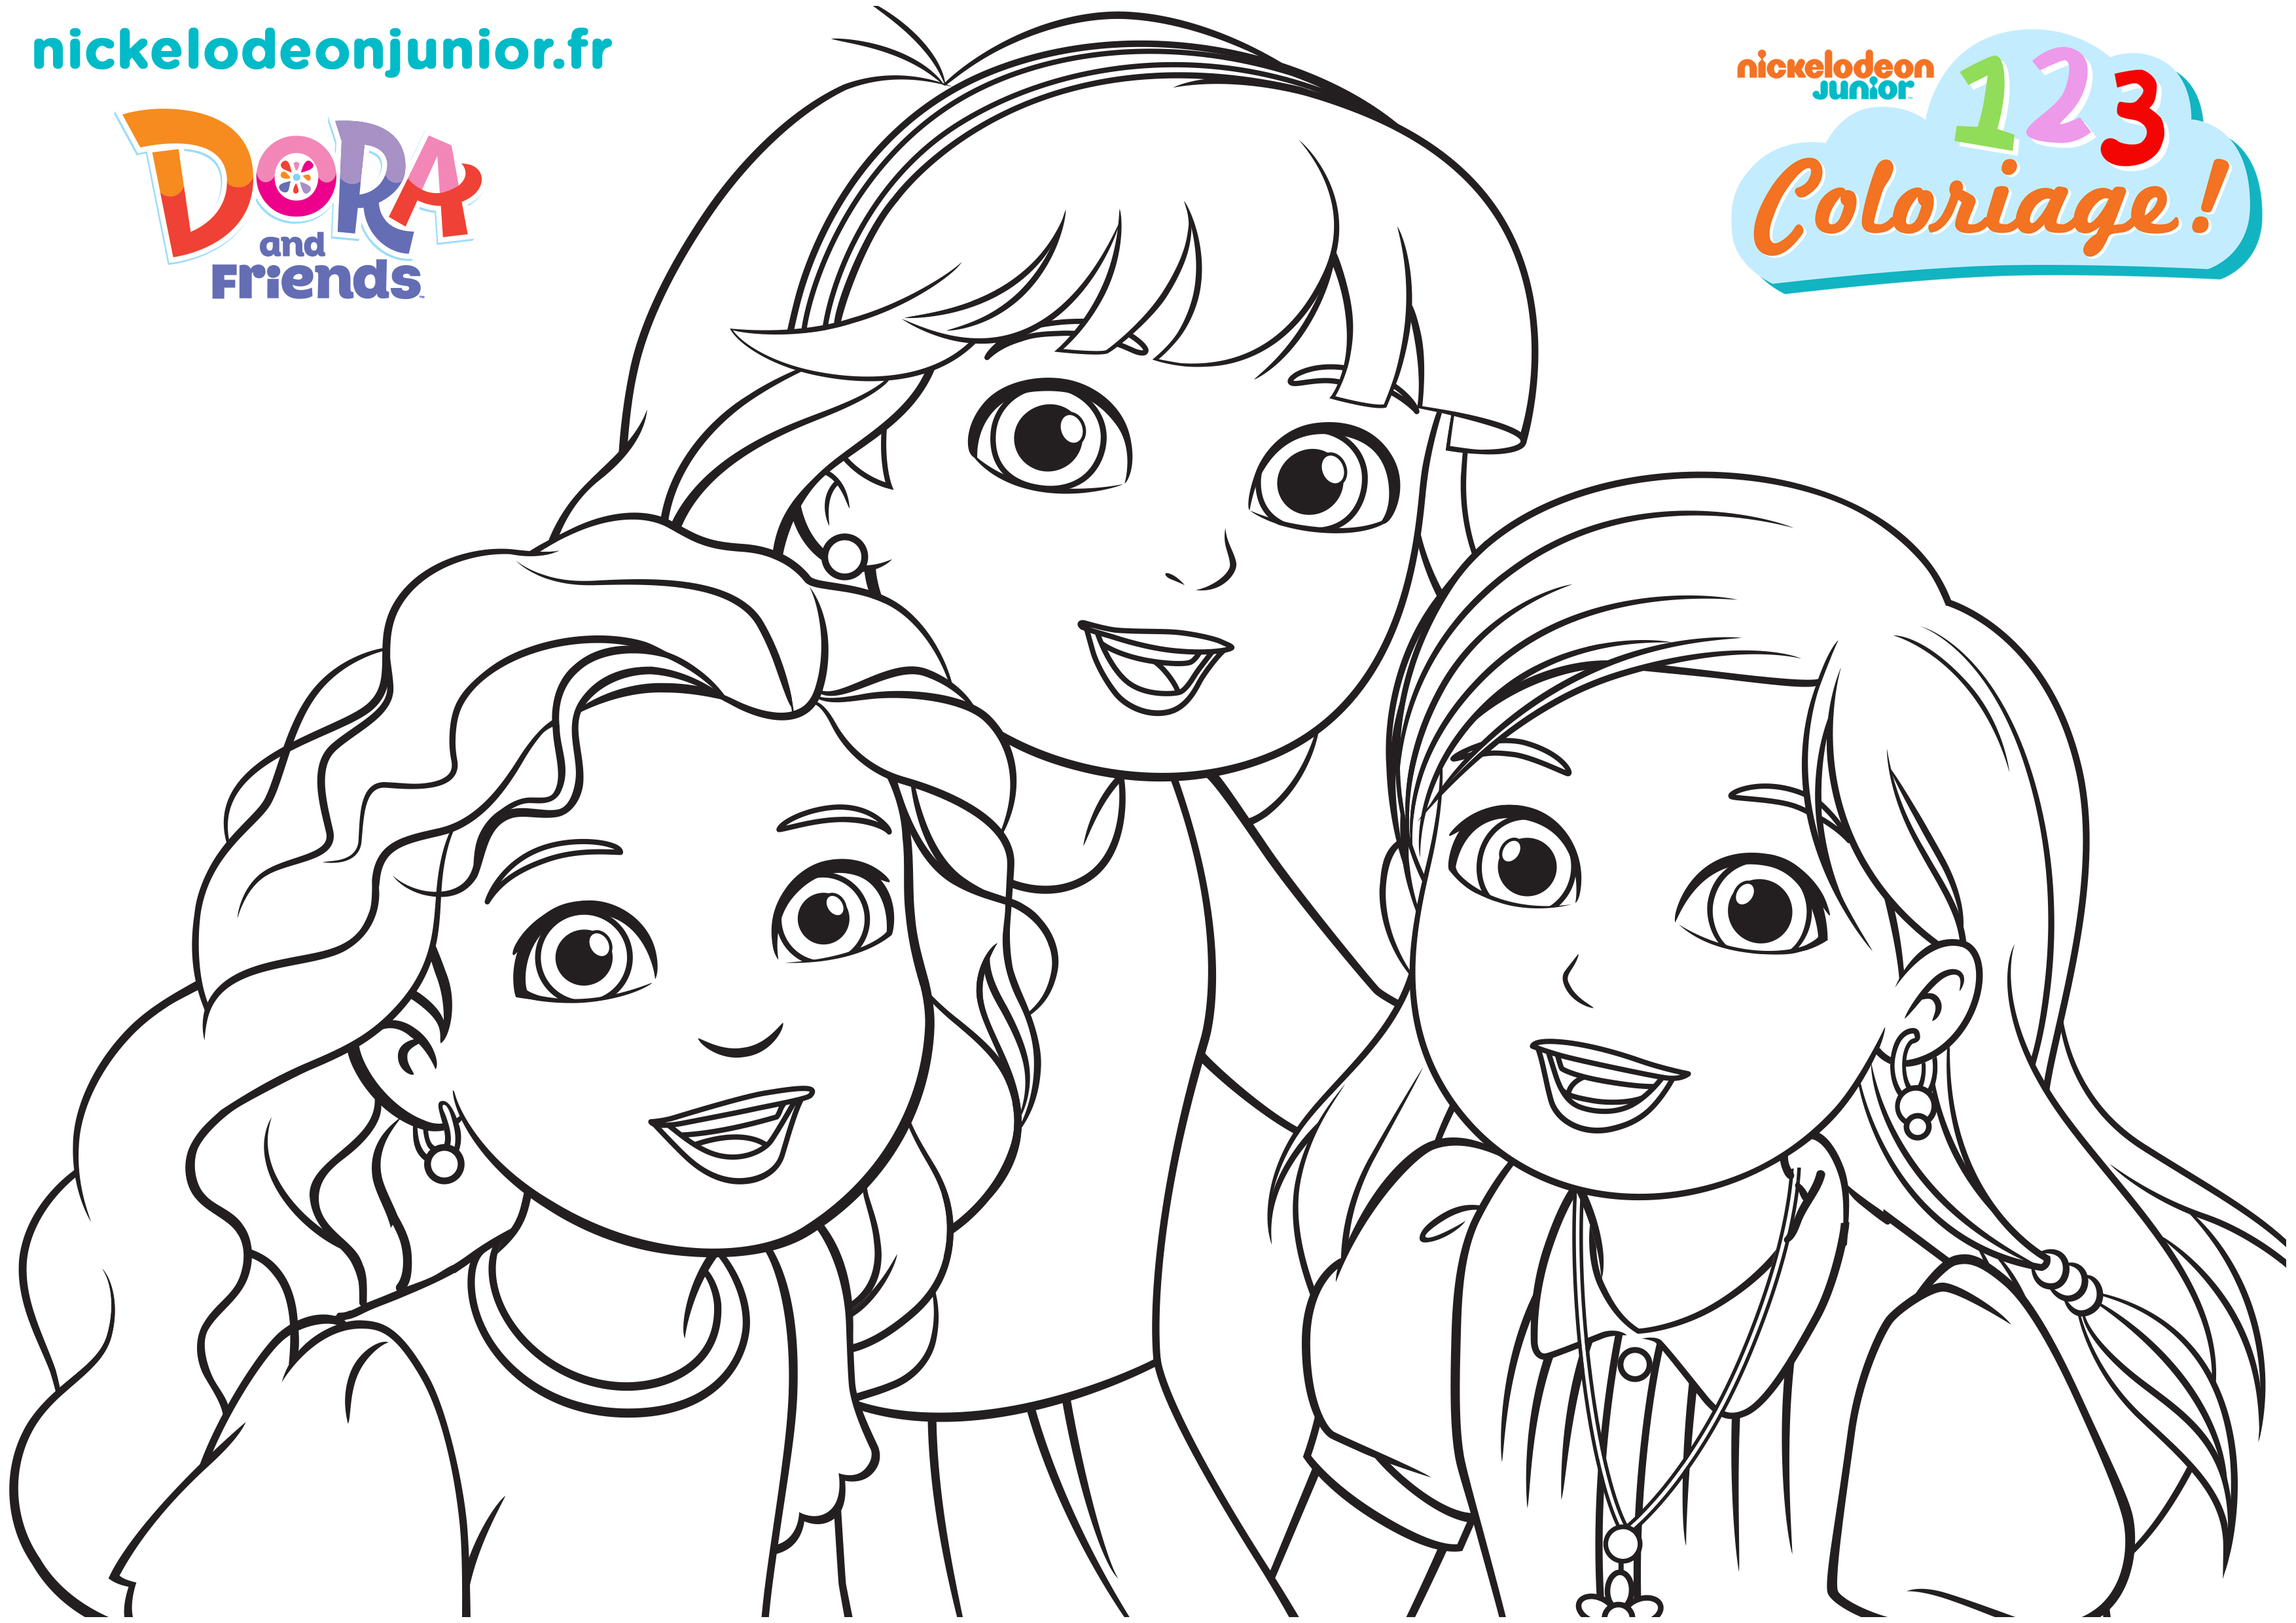 1, 2, 3... Coloriage ! | Dora and Friends : au coeur de la ville | Les trois amies